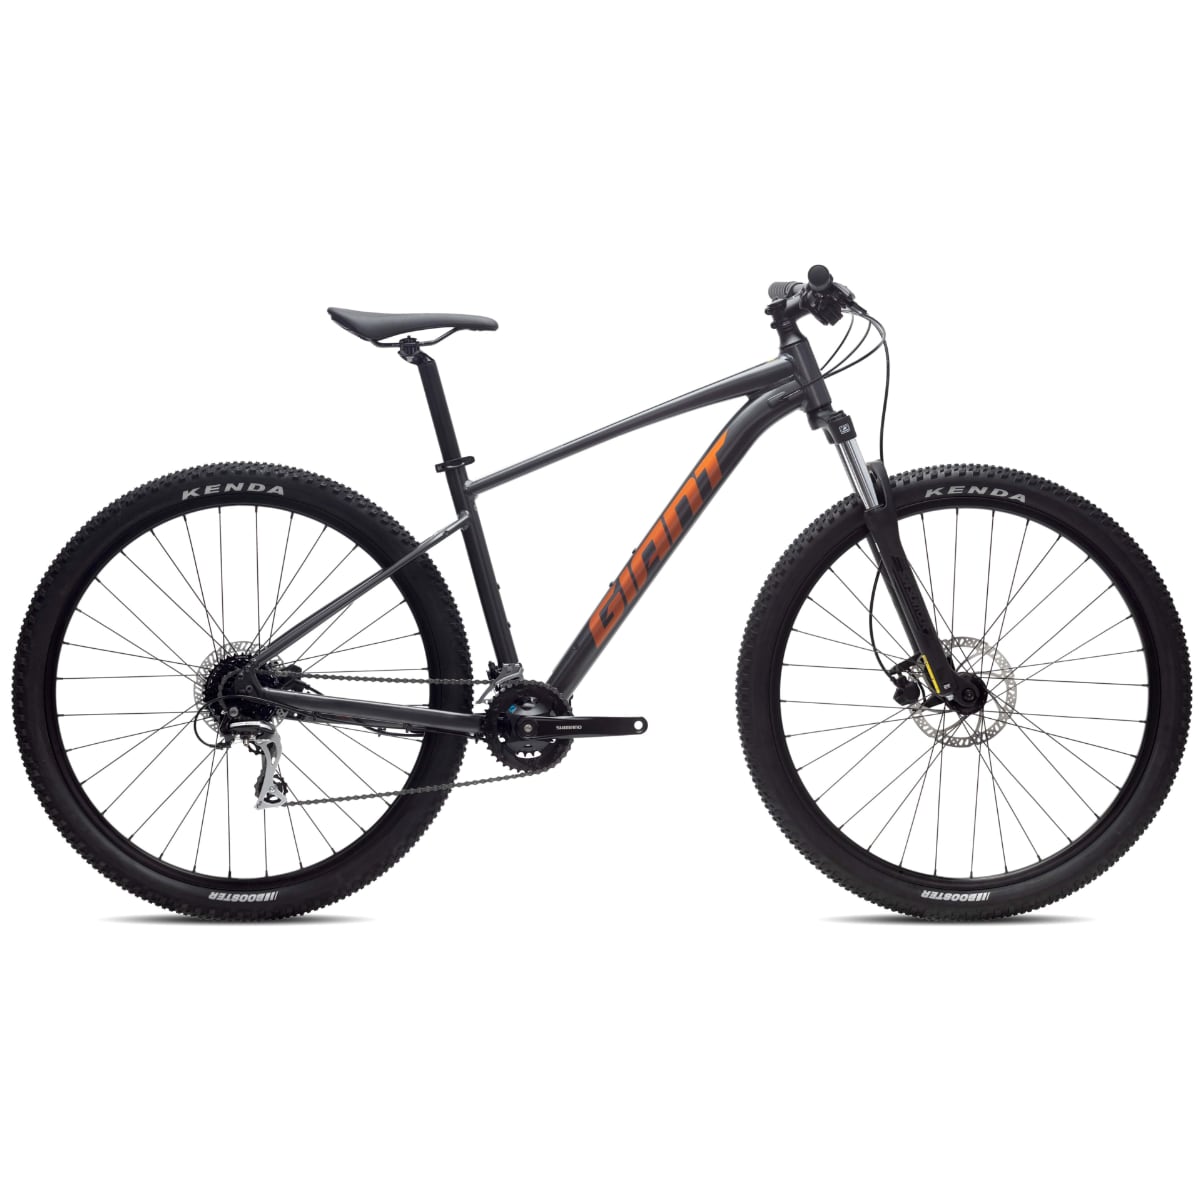 نکته خرید - قیمت روز دوچرخه کوهستان جاینت مدل TALON 3 Black Chrome سایز 27.5 خرید